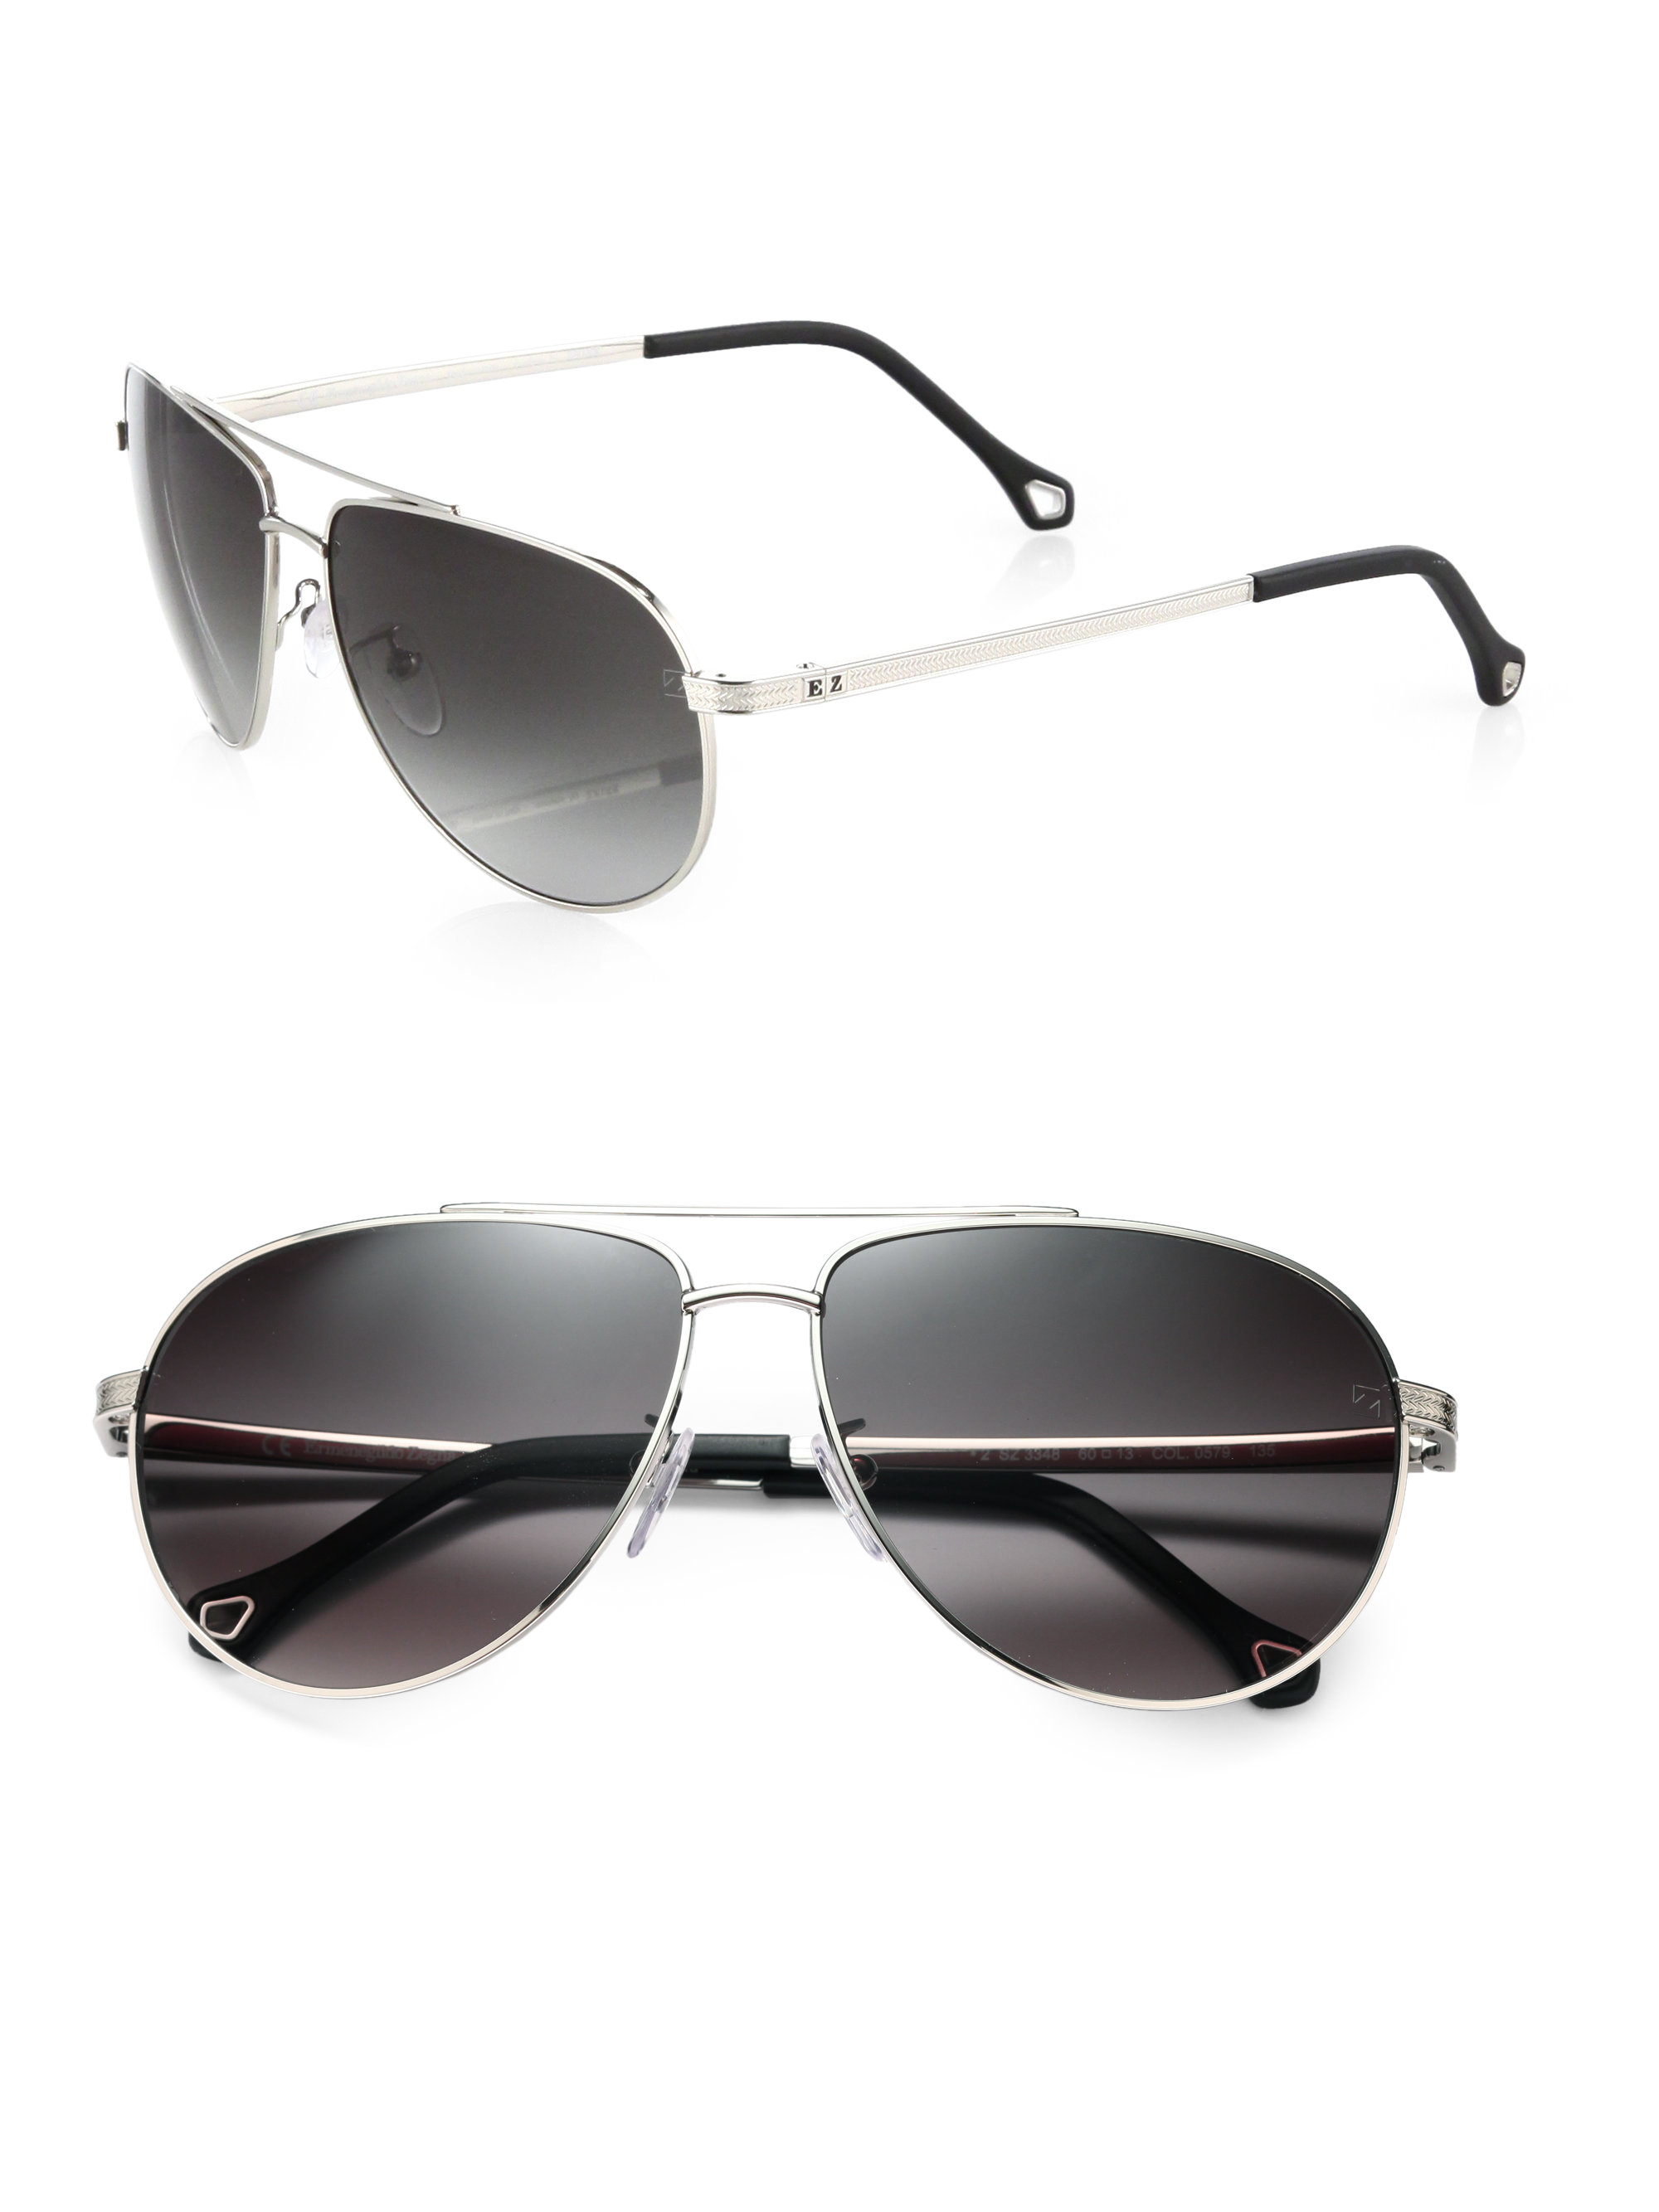 Lyst - Ermenegildo Zegna Metal Aviator Sunglasses in Metallic for Men